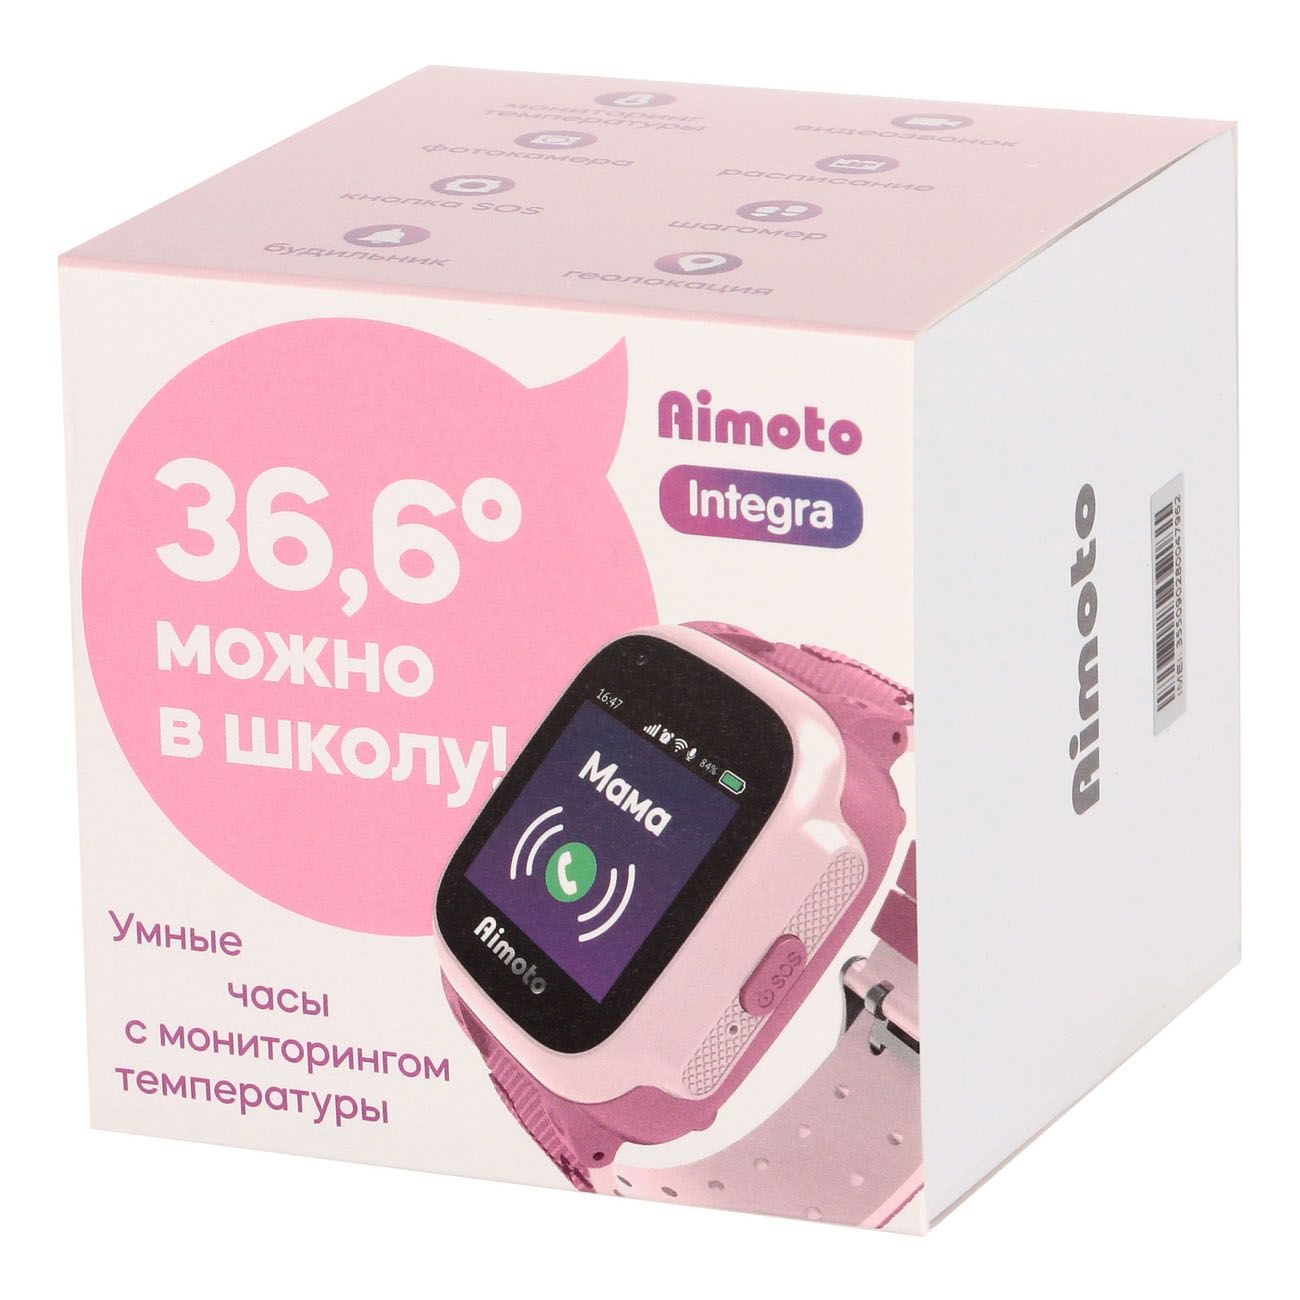 Отзывы часов aimoto. Детские смарт часы Аймото 4g с GPS. Часы с трекером Aimoto Integra 4g. Детские умные часы Aimoto Integra 4g. Aimoto Pro 4g.